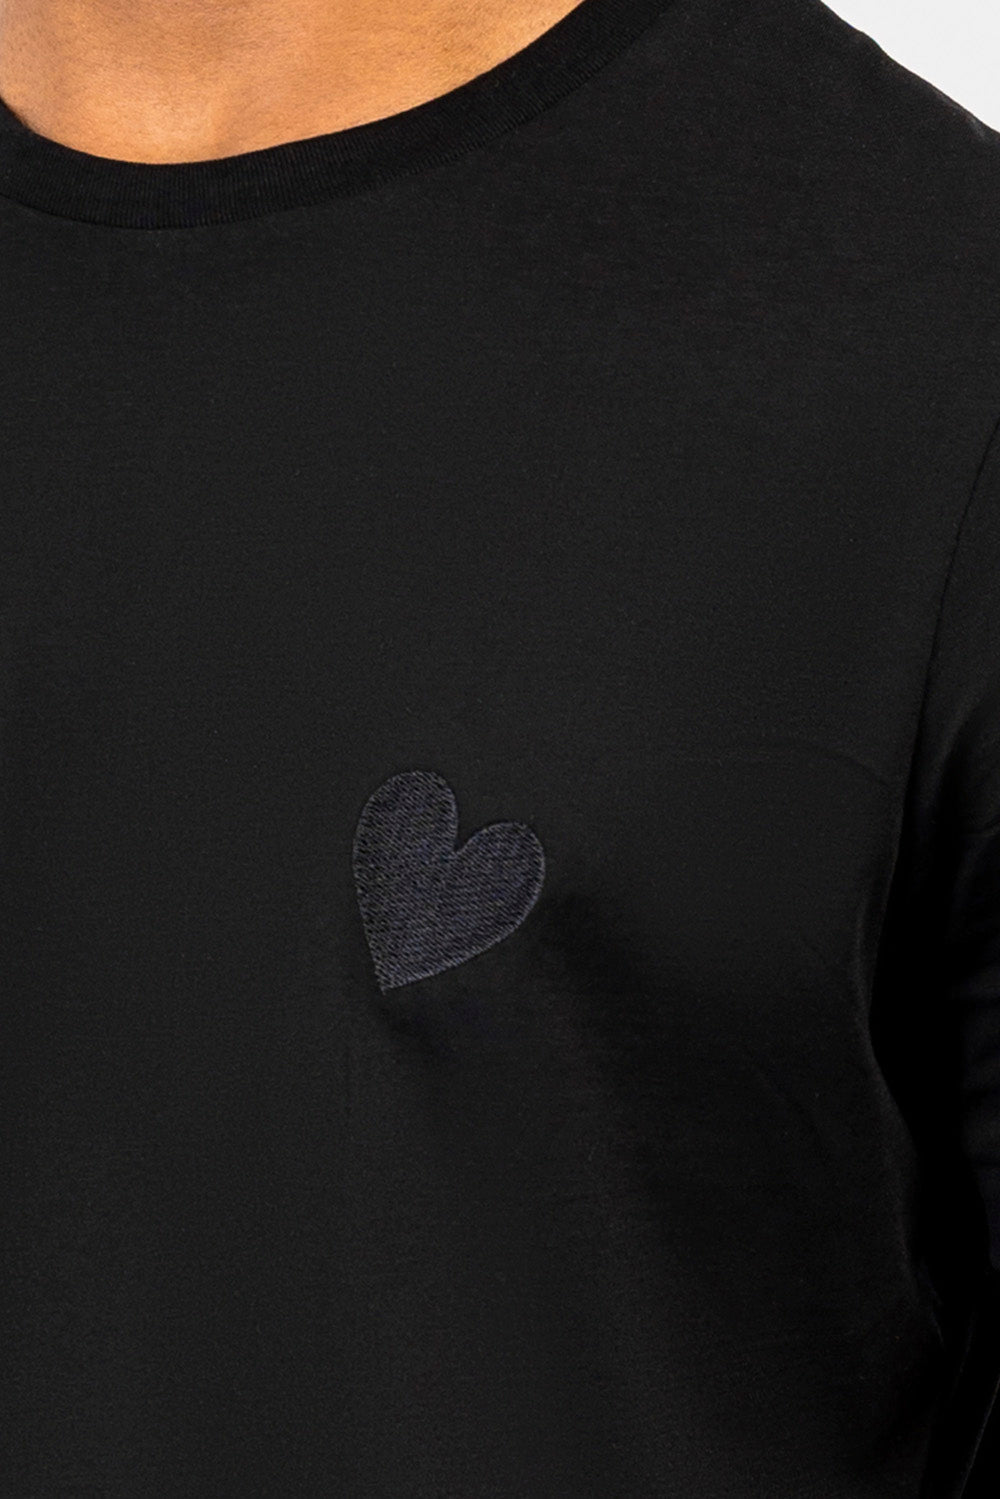 T-shirt durable Heart